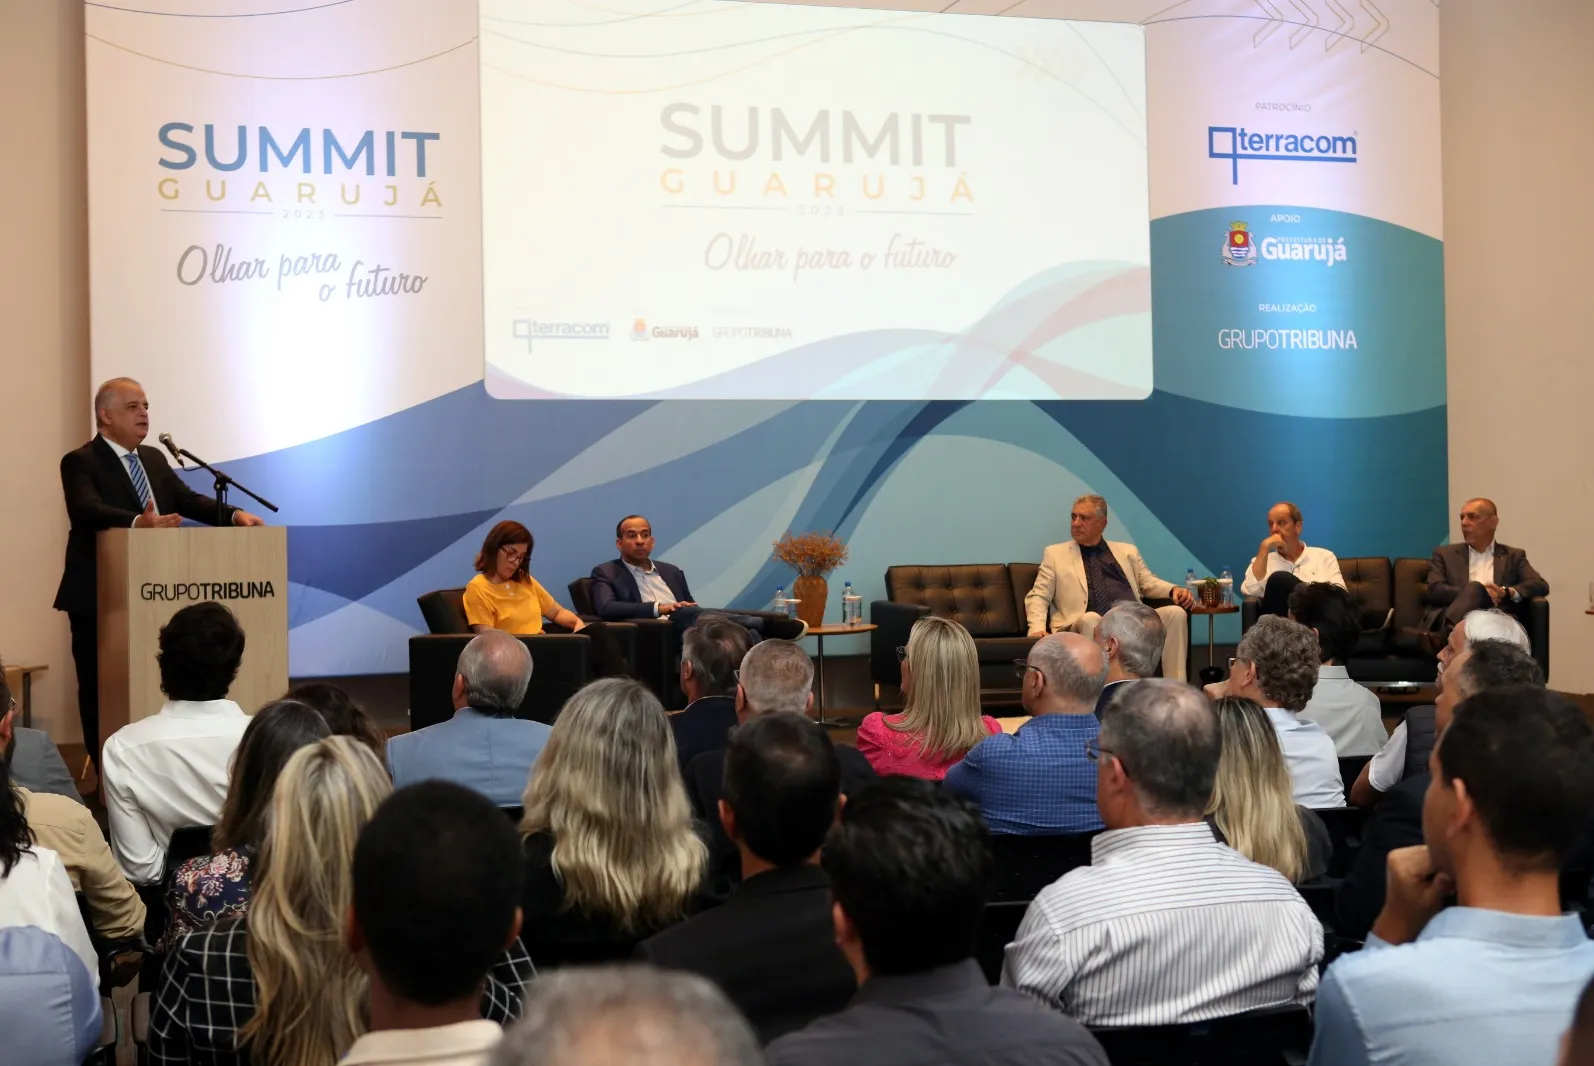 Summit Guarujá 2023 - Olhar para o Futuro, foi realizado nesta segunda-feira (26) no Auditório do Grupo Tribuna